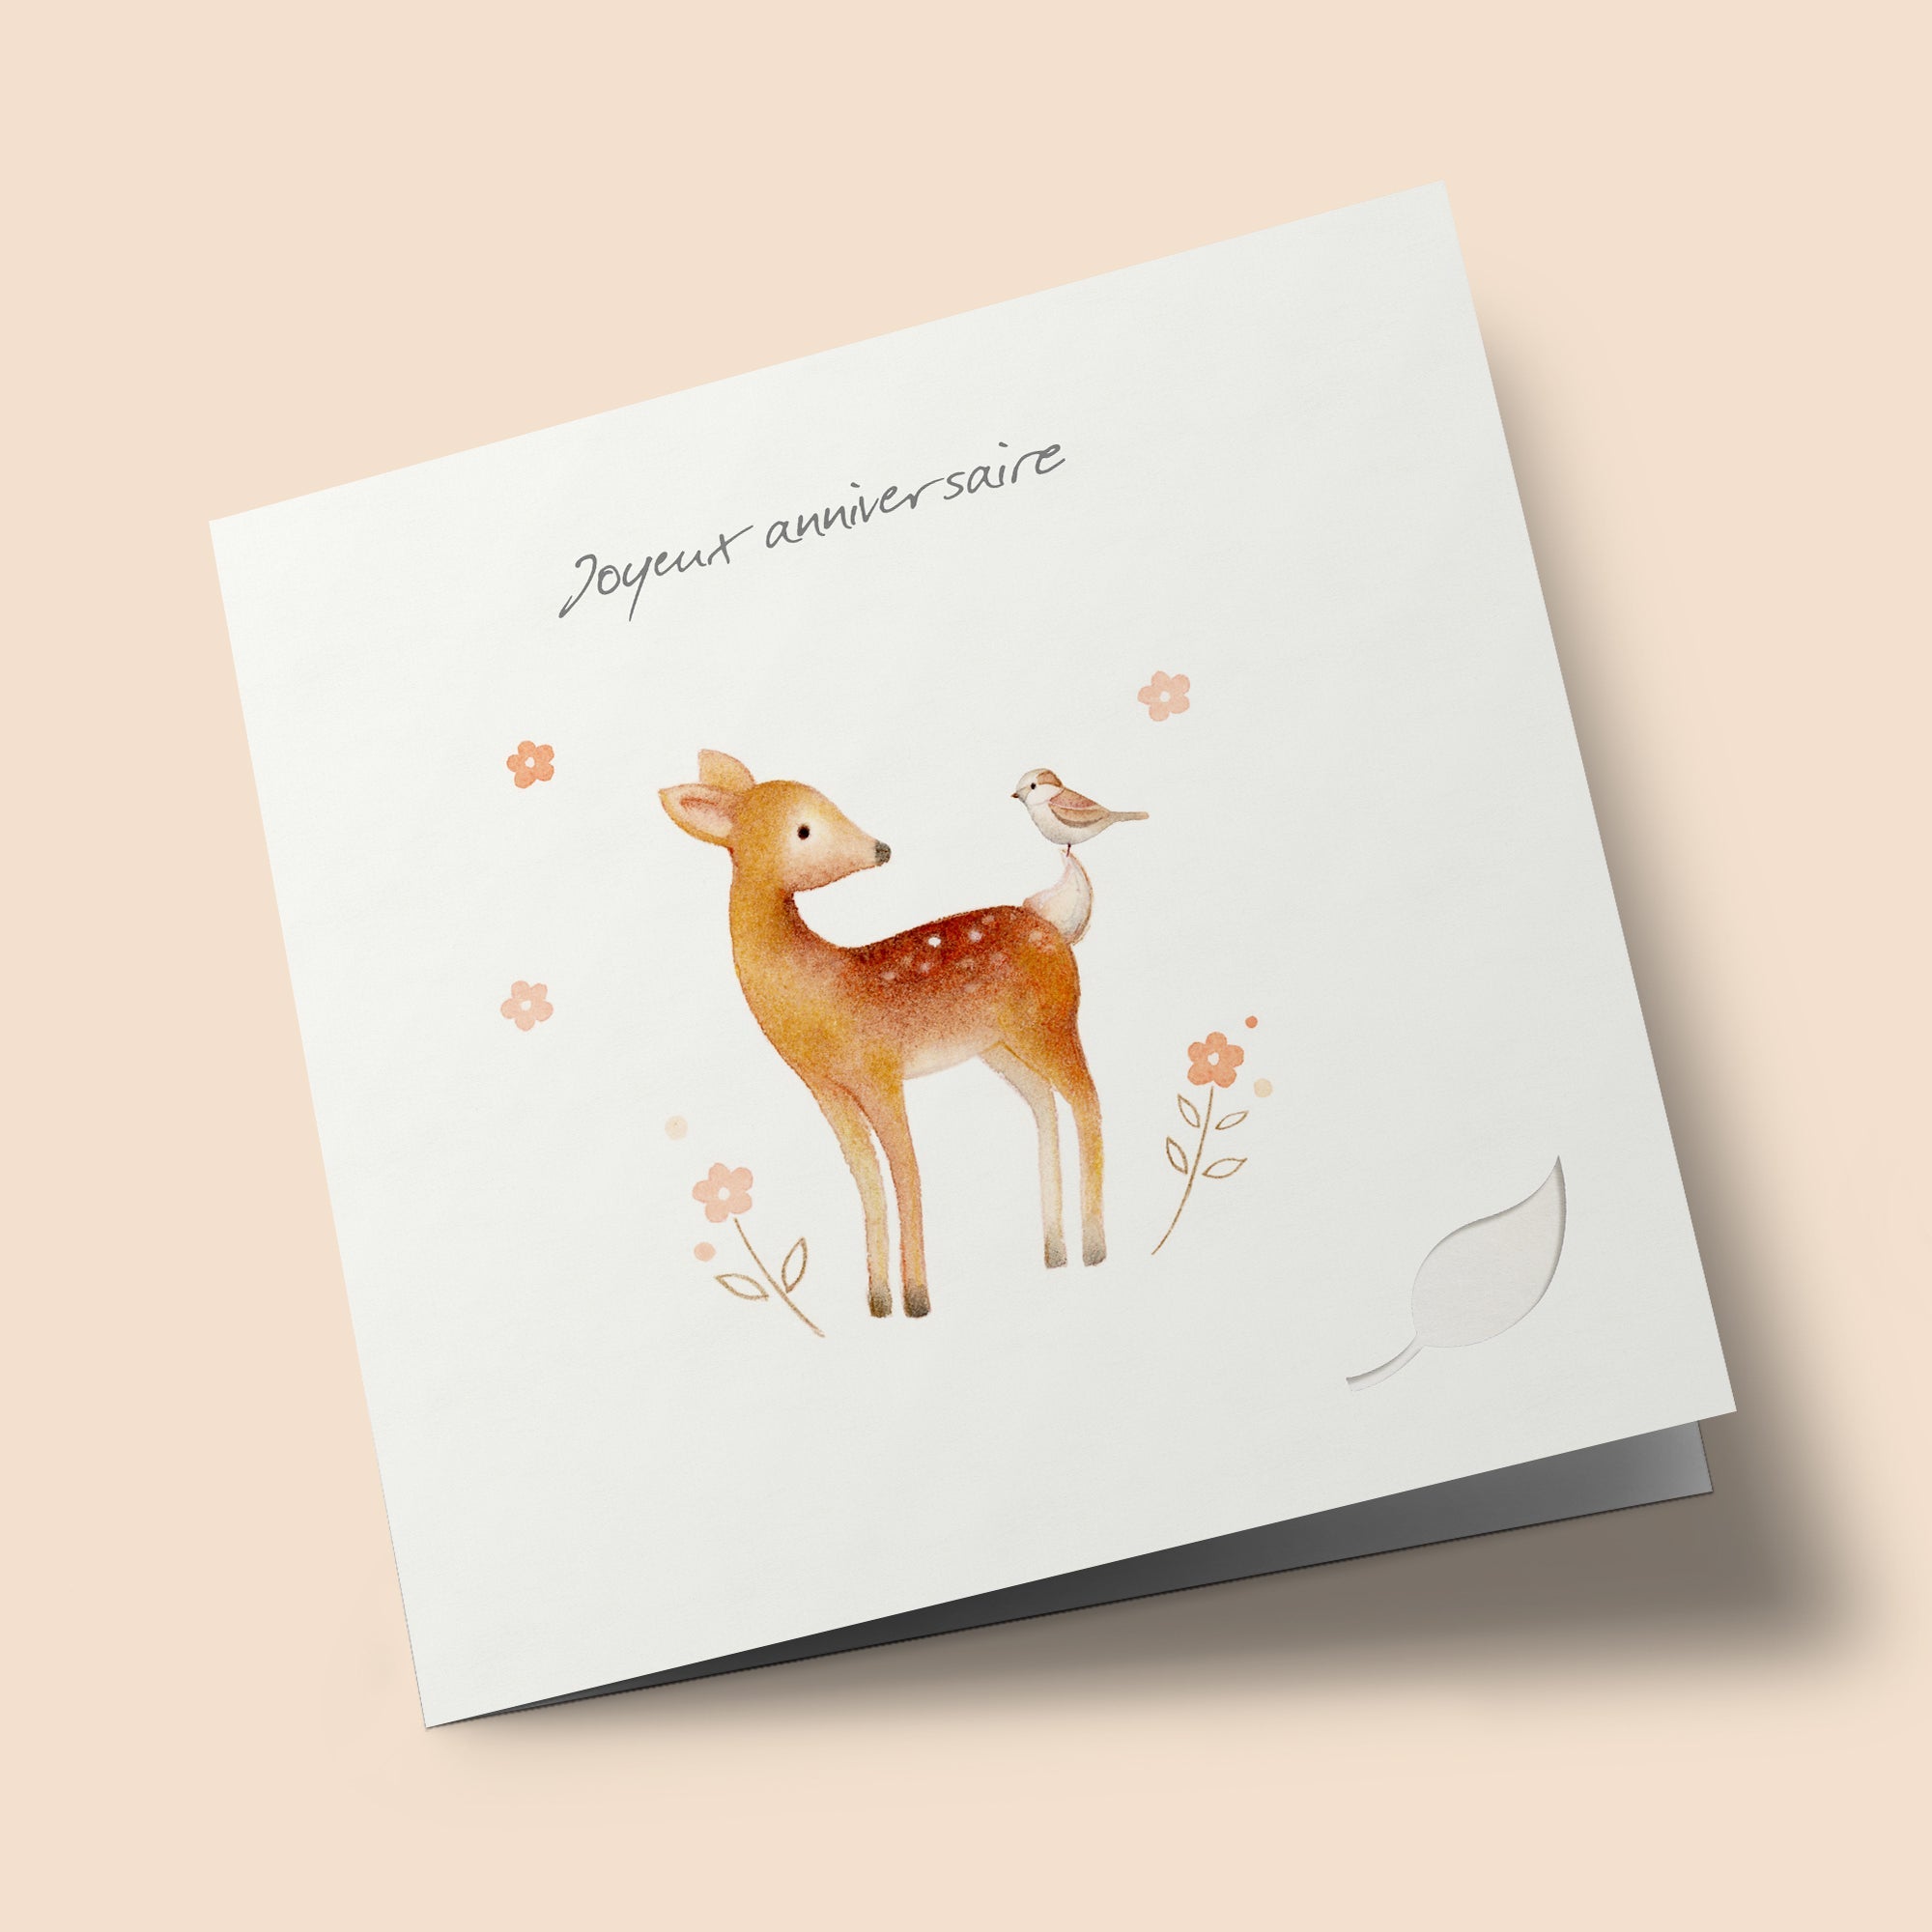 Owl's Nest - "Joyeux anniversaire" - Deer and Bird